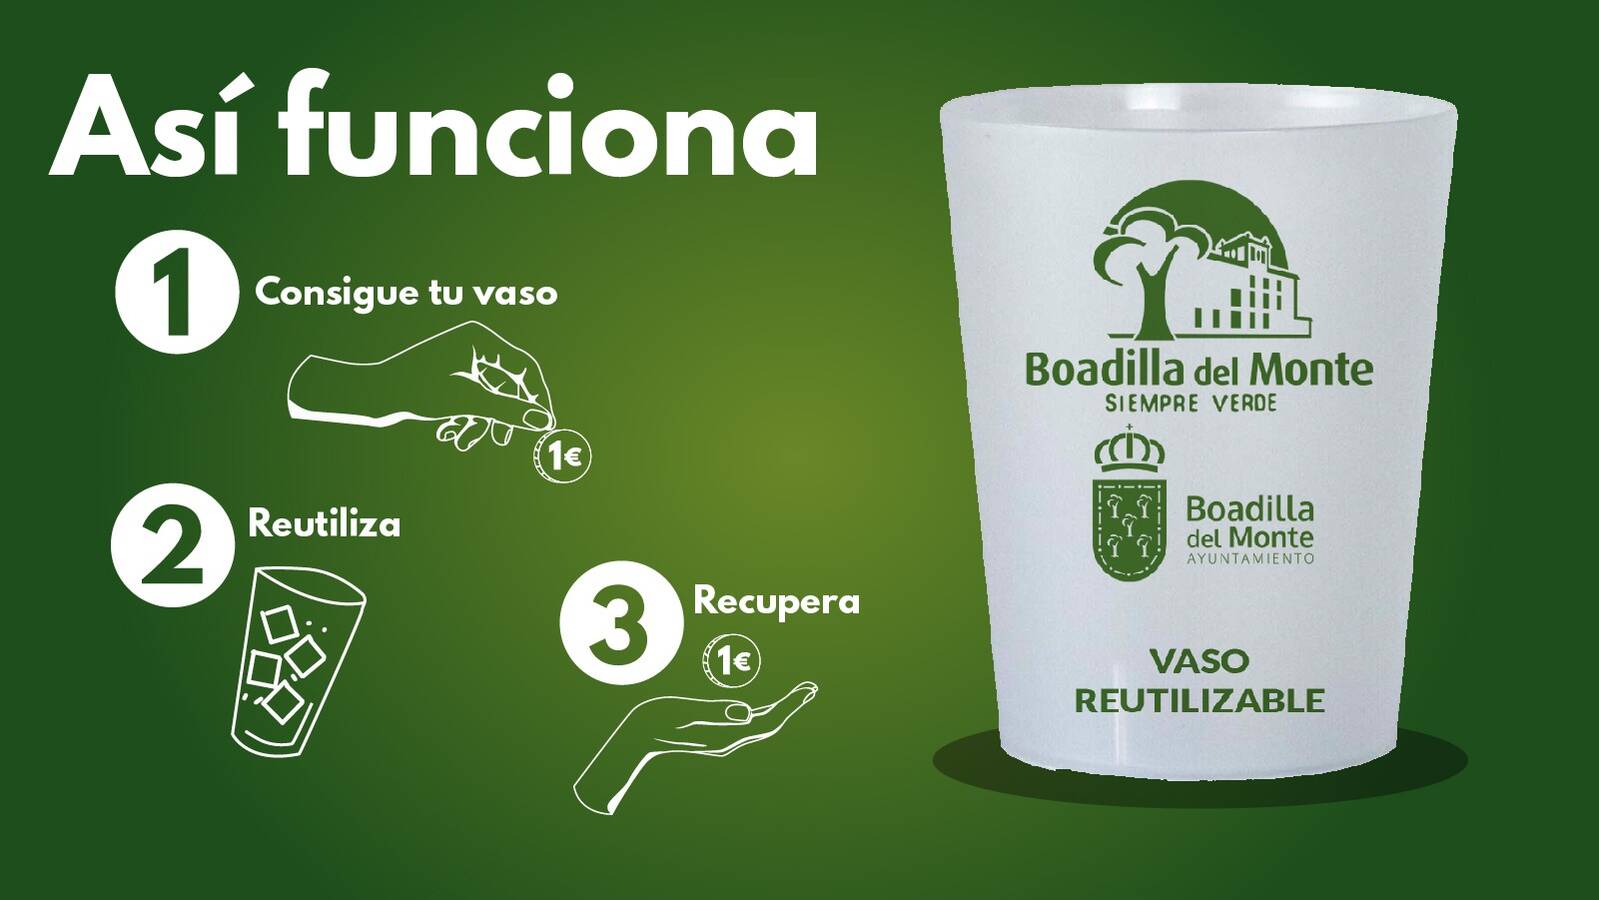 El Ayuntamiento de Boadilla repartirá vasos reutilizables en la carpa de las fiestas